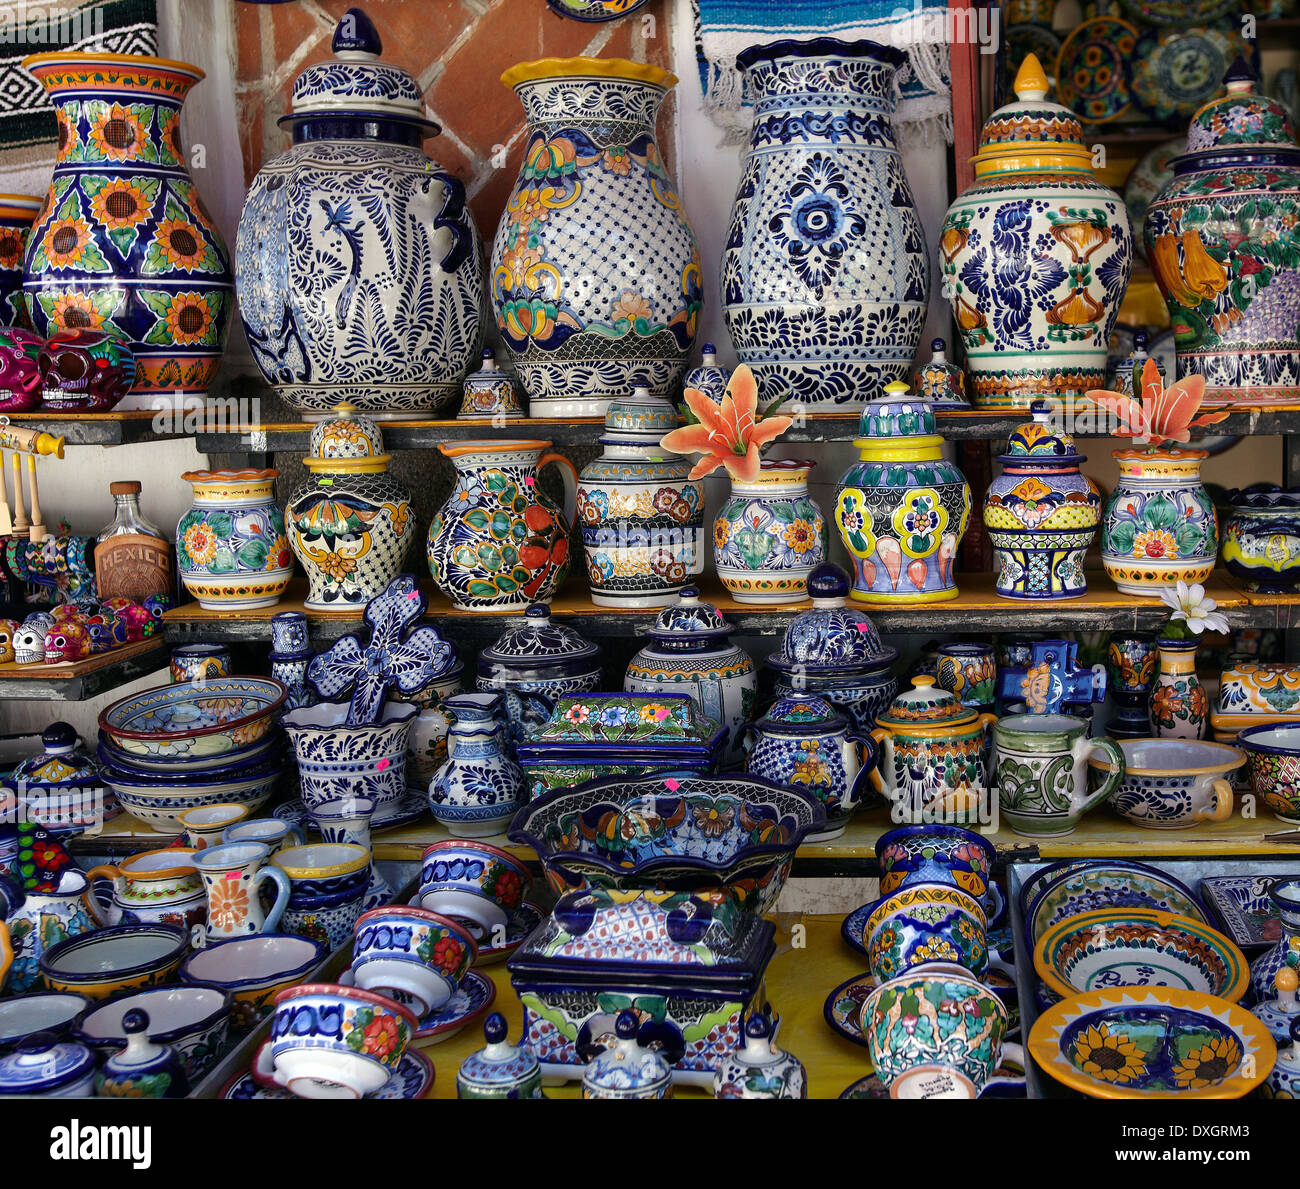 América, México, estado de Puebla, la ciudad de Puebla, el barrio de los sapos, la cerámica tradicional de talavera de Puebla Foto de stock